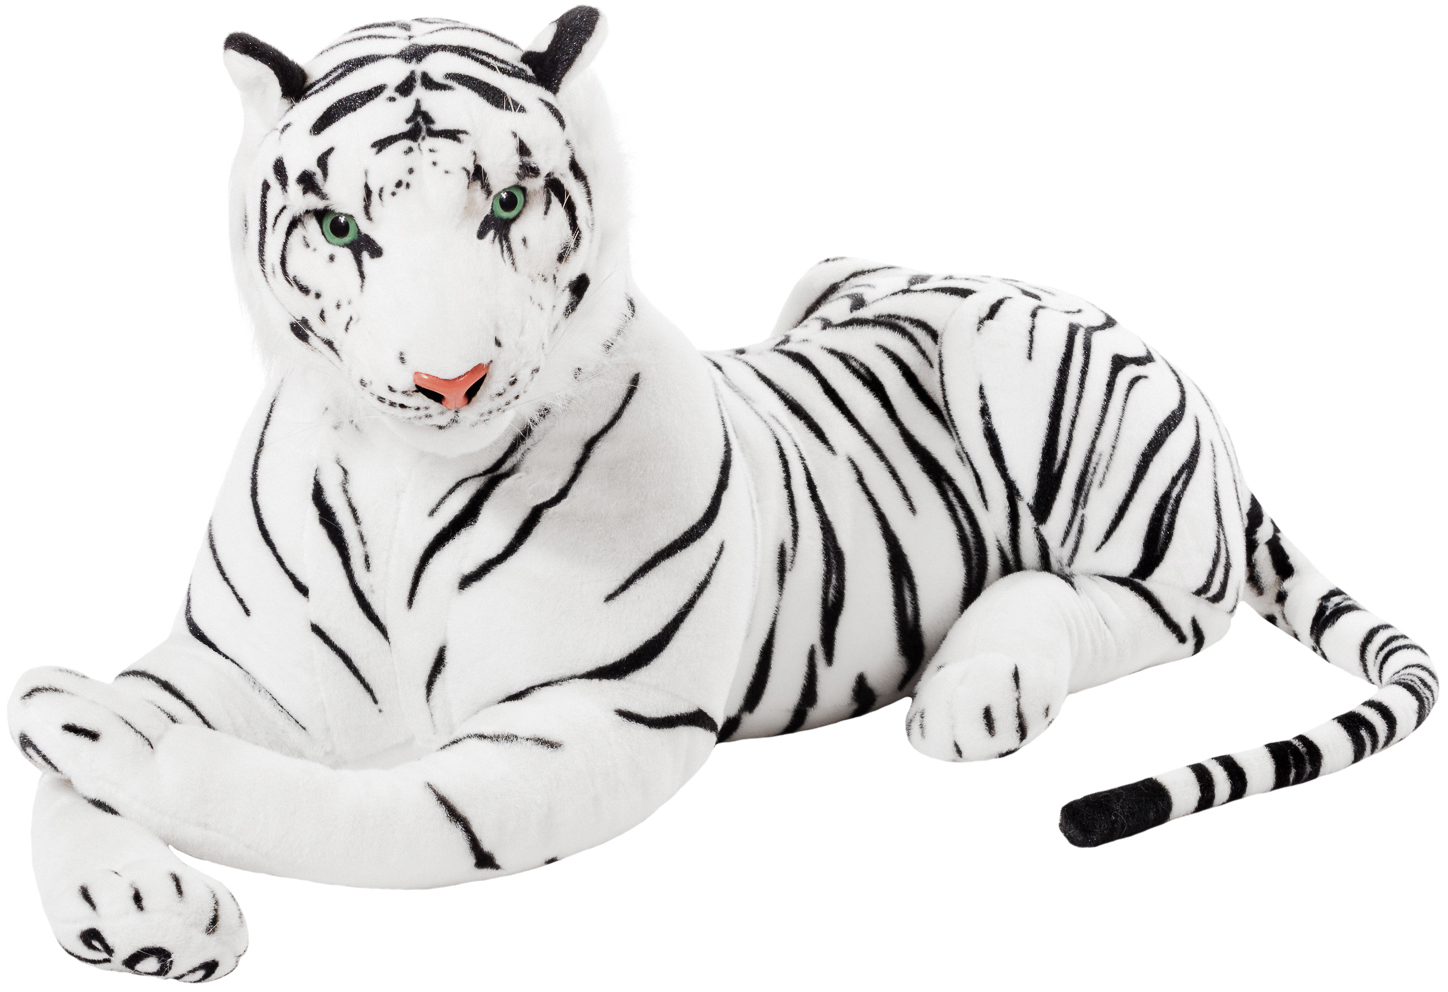 Plüschtier Tiger 24 cm weiss Plüschtiger Stofftiger Plüsch Raubkatze gross 